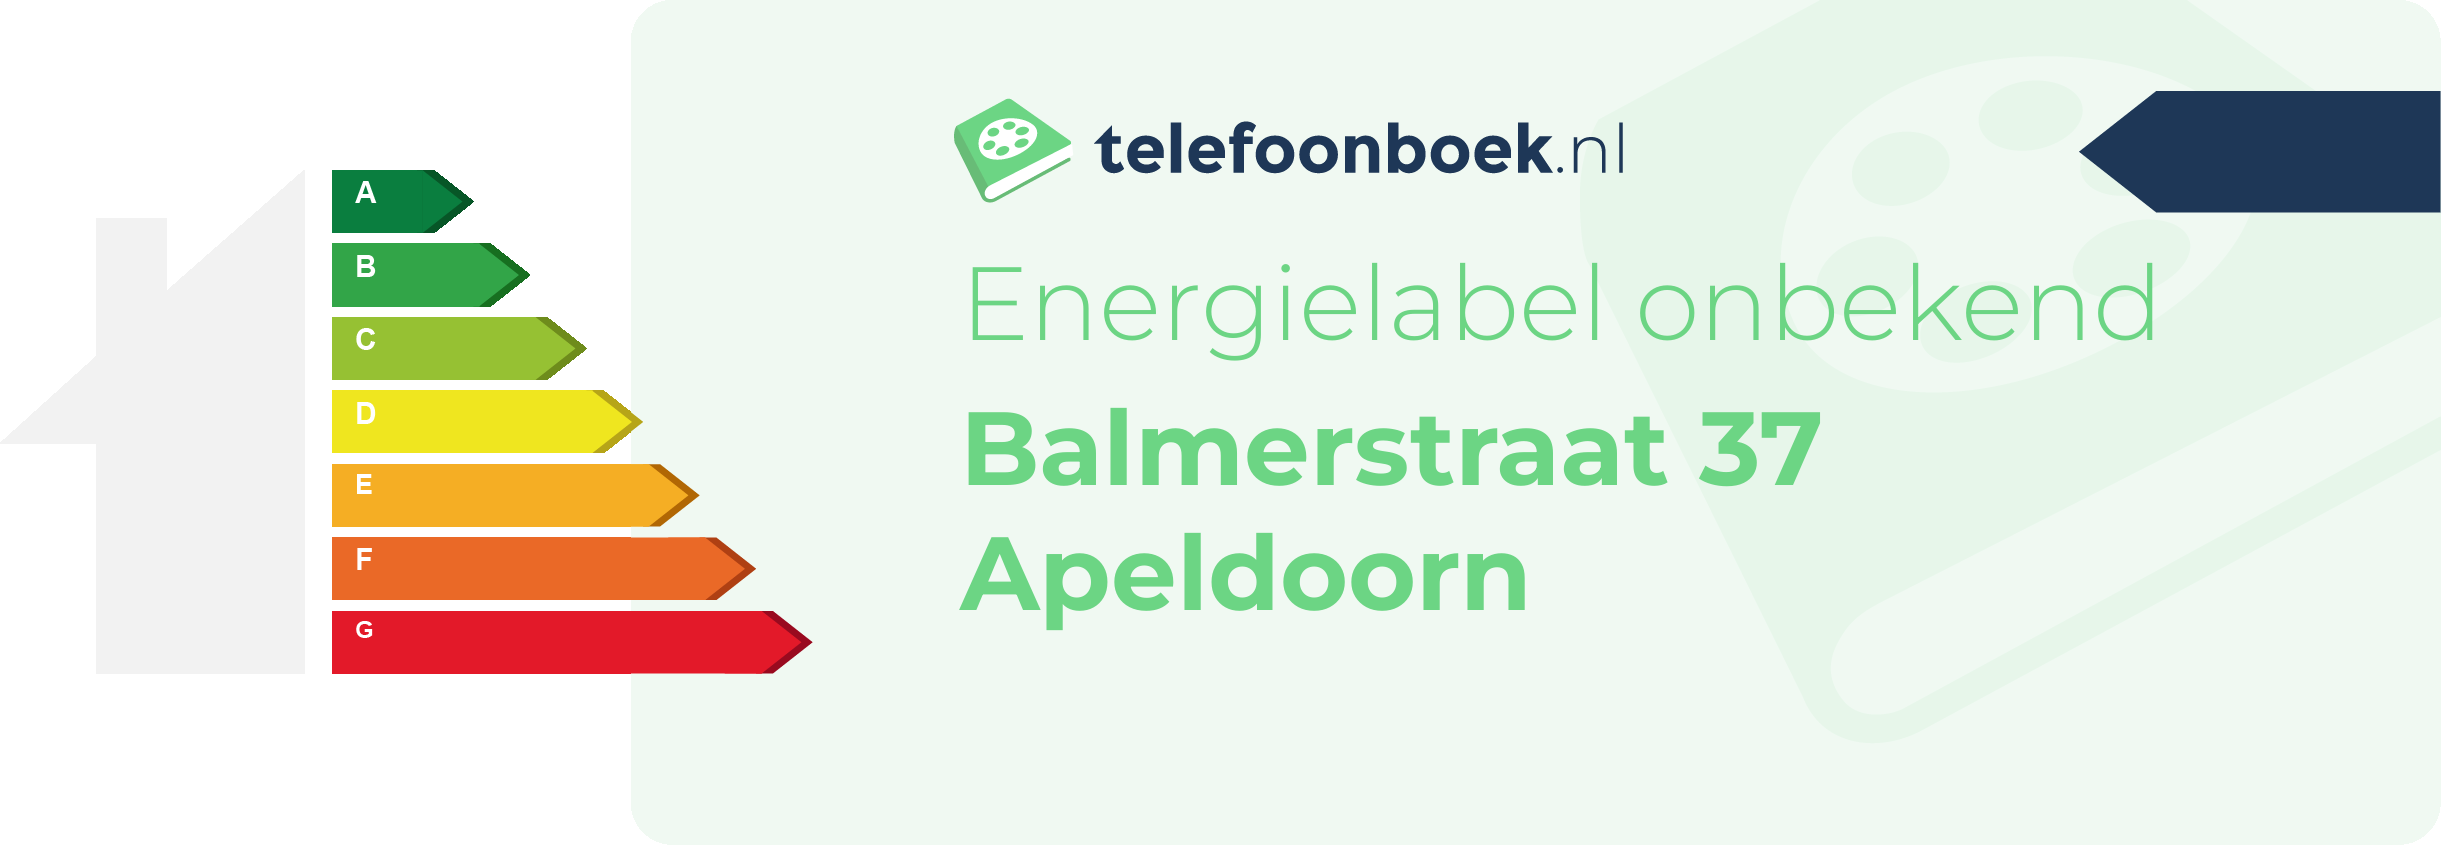 Energielabel Balmerstraat 37 Apeldoorn